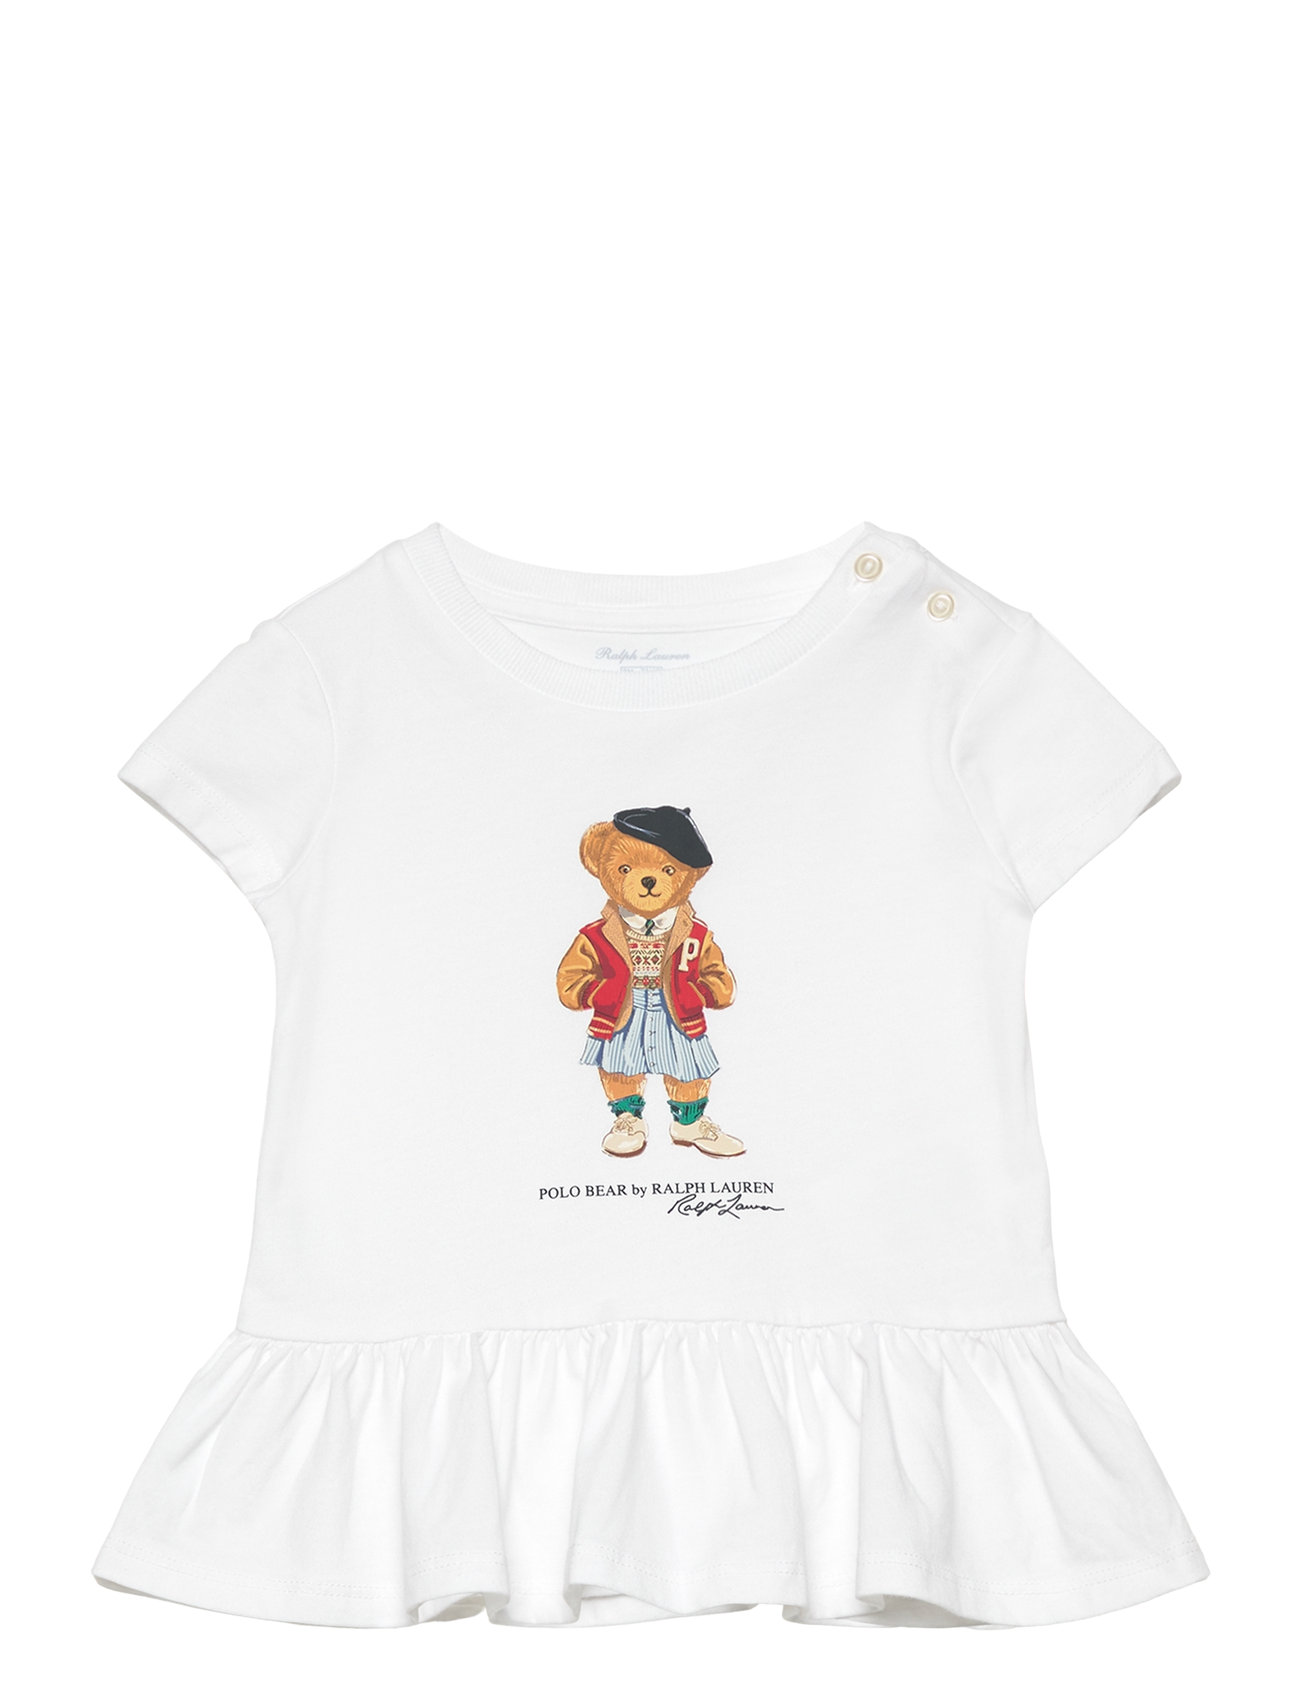 Polo Bear Cotton Jersey Peplum Tee Tops T-shirts Short-sleeved White Ralph Lauren Baby